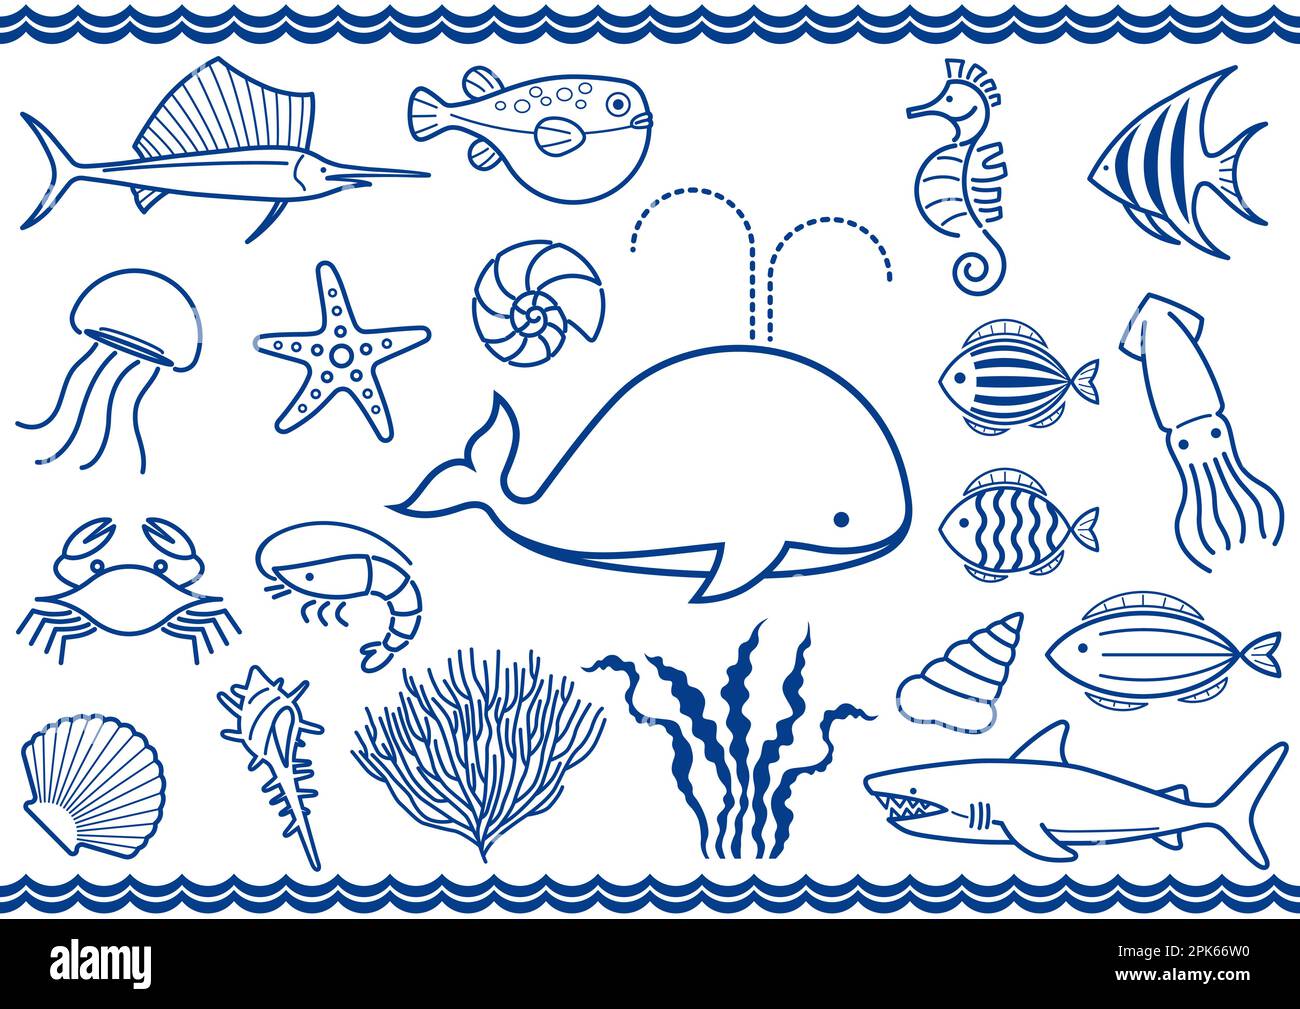 Vector Marine Life Illustration Set isoliert auf weißem Hintergrund. Stock Vektor